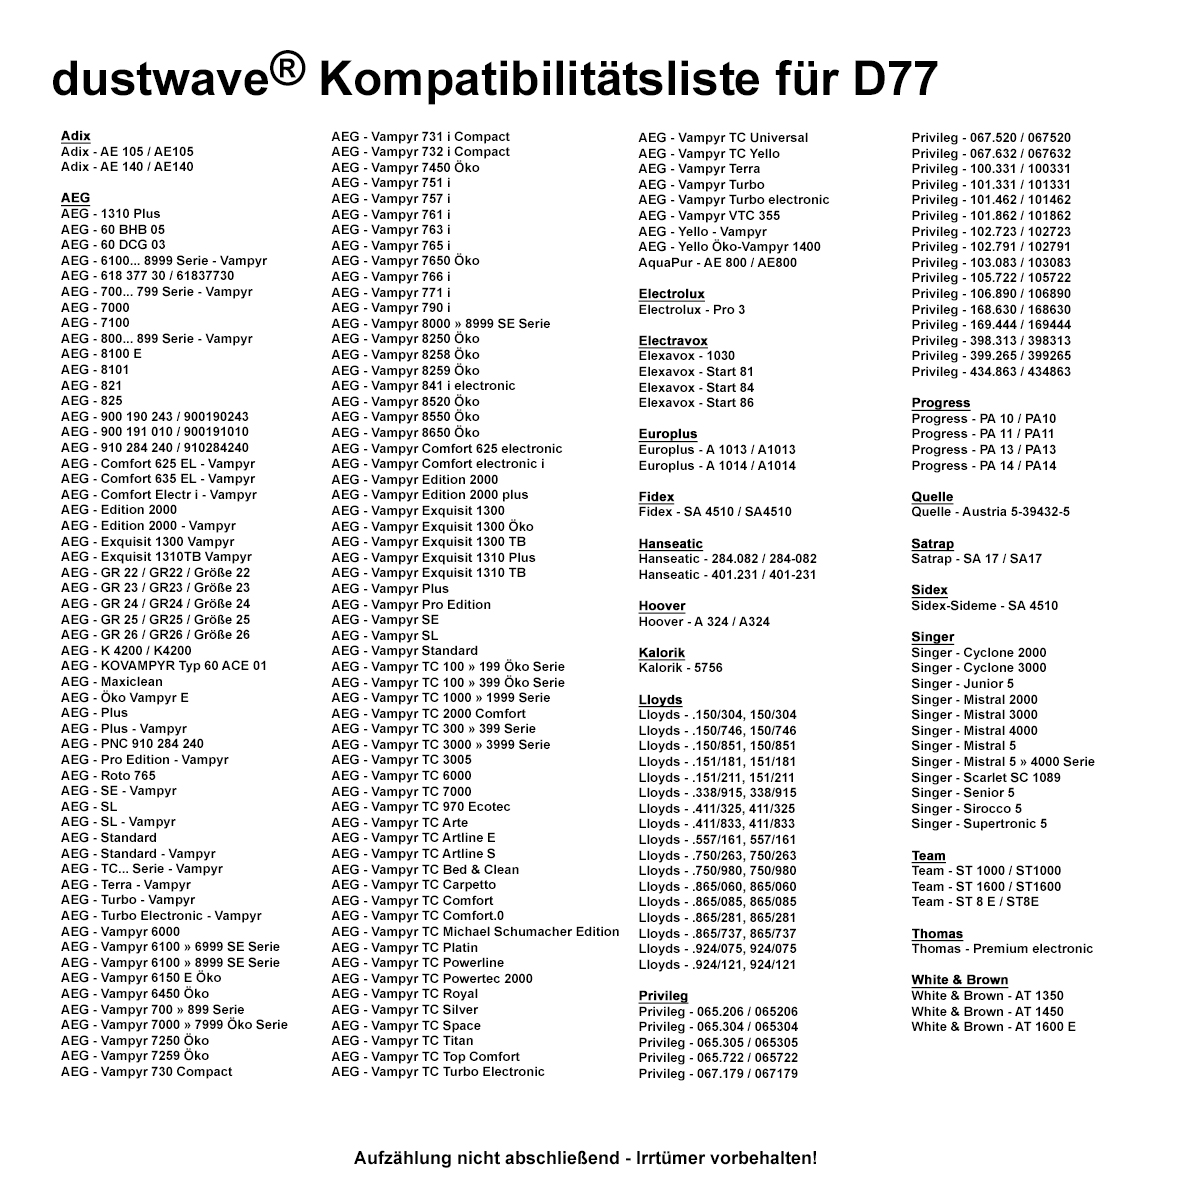 Dustwave® 10 Staubsaugerbeutel für AEG Vampyr 8800 - hocheffizient, mehrlagiges Mikrovlies mit Hygieneverschluss - Made in Germany